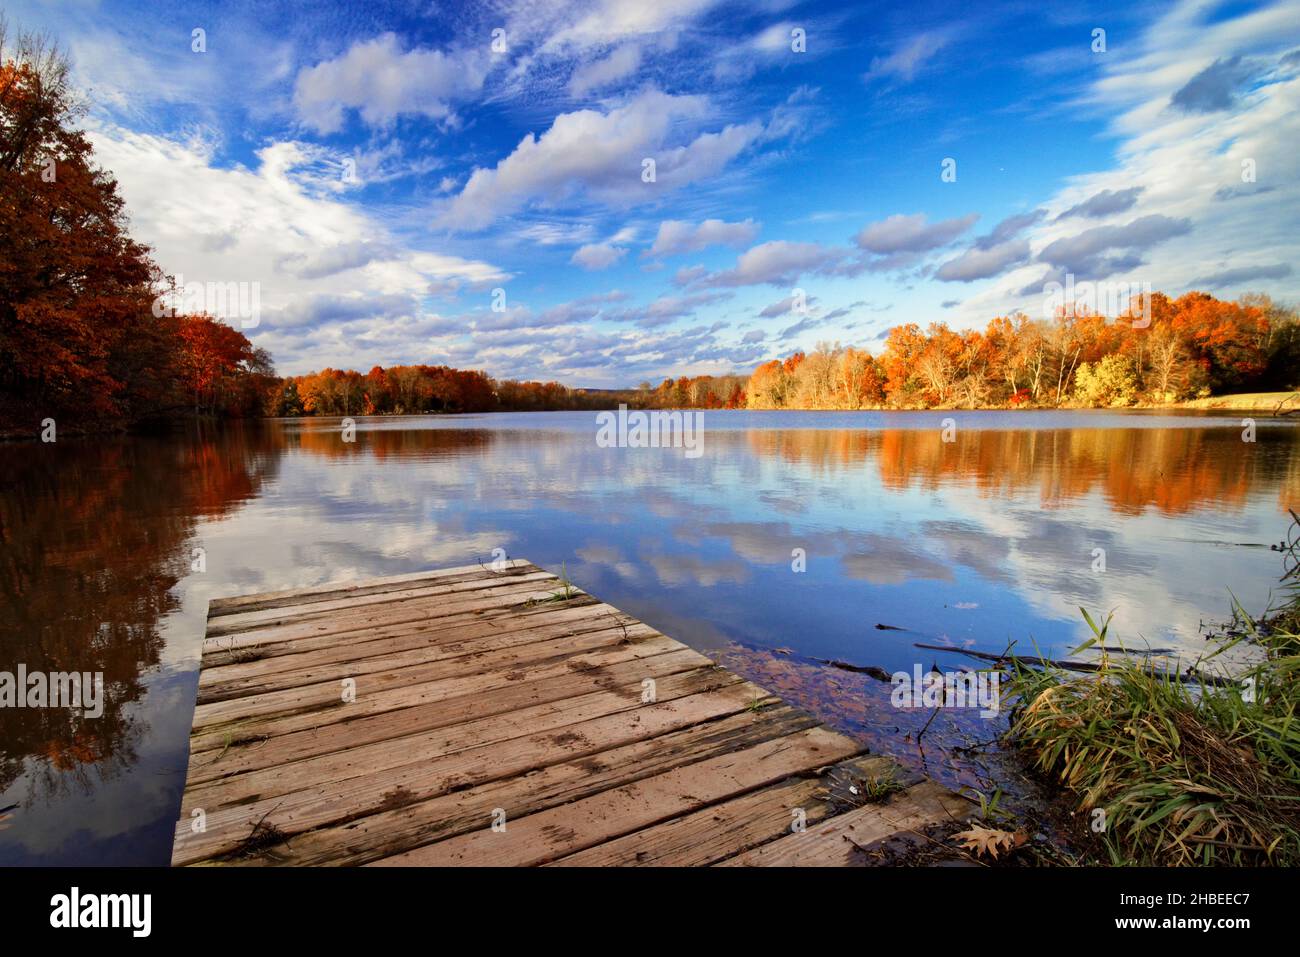 Fall Scenic View of Lake Cushetunk. Whitehouise Station, Hunterdon County, New Jersey, USA Stock Photo